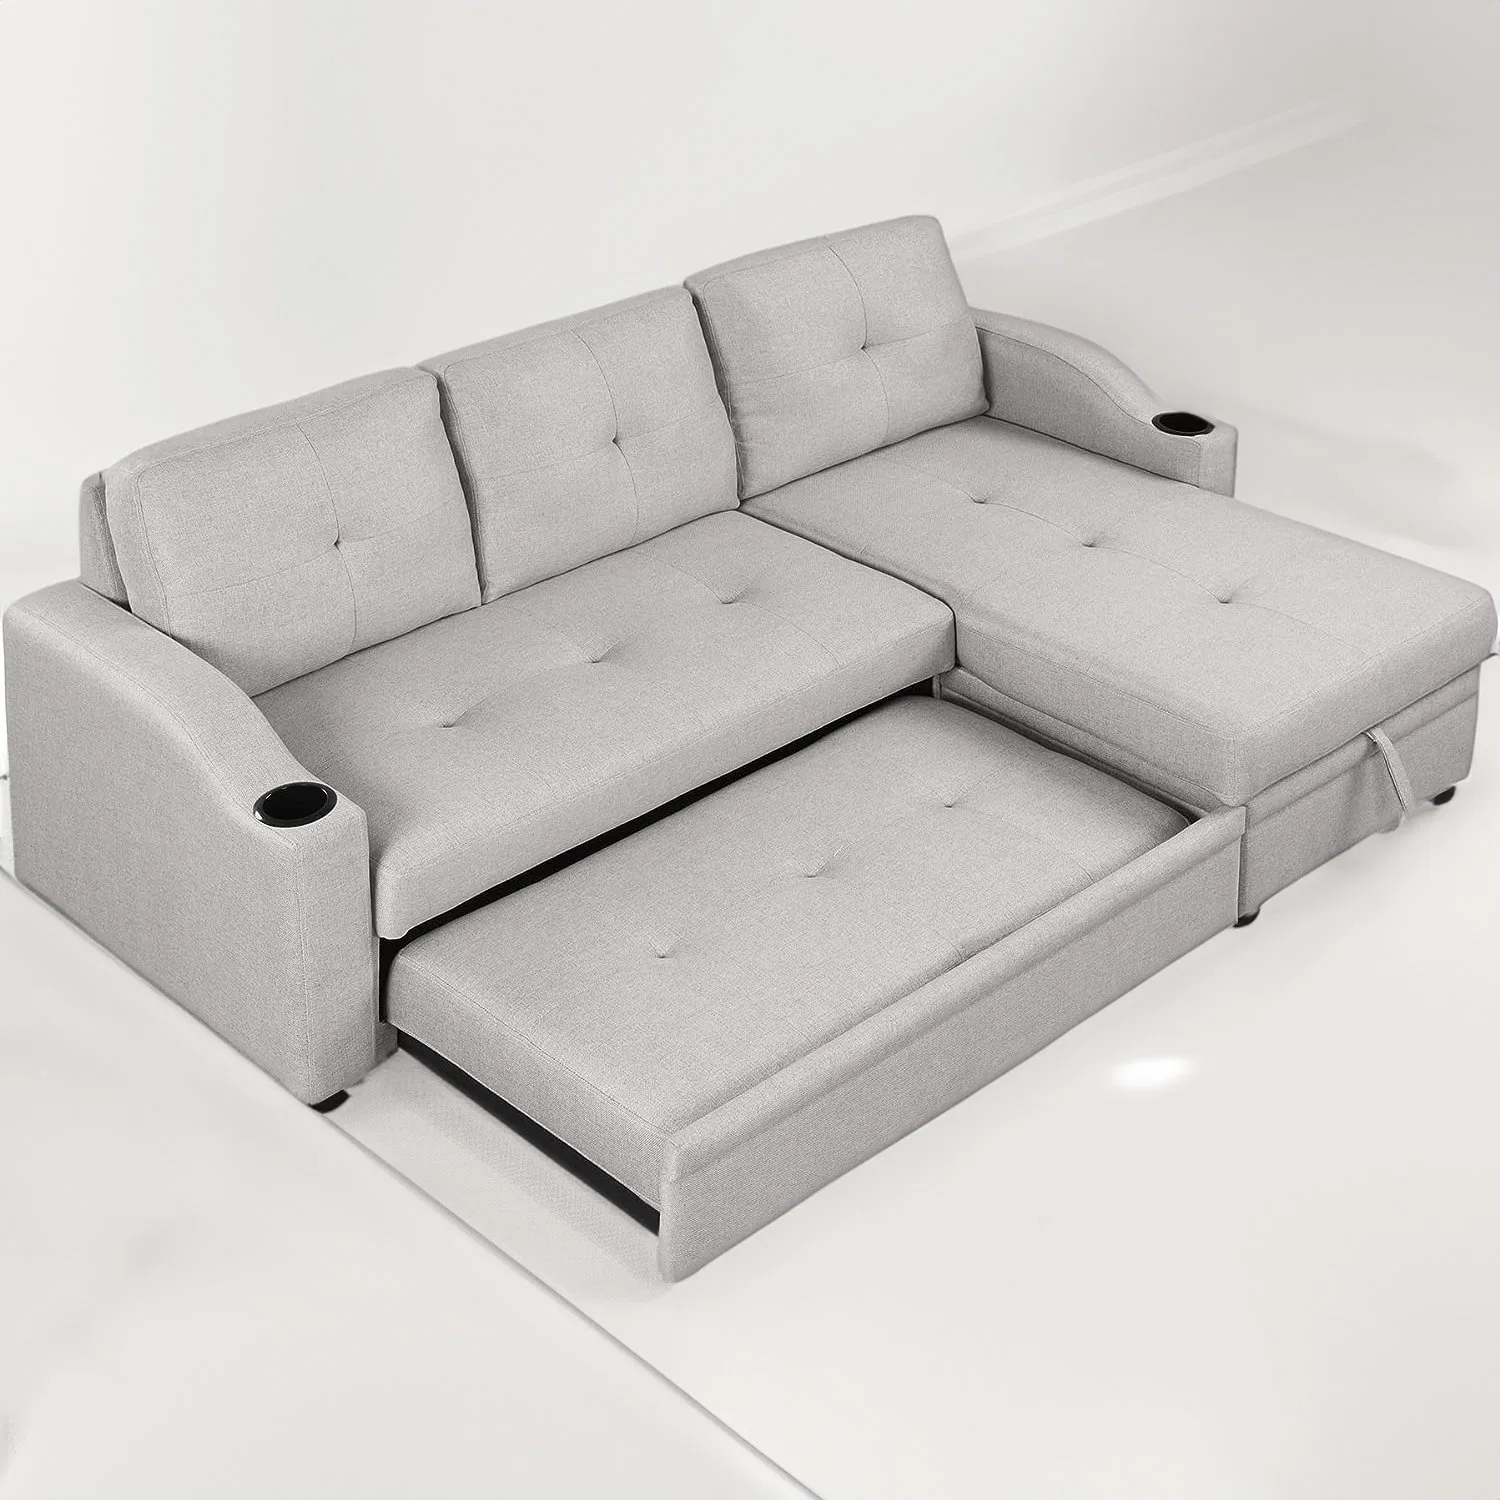 Fabricação Huayang personalizado sala de estar mobiliário mobiliário funcional moderno Folding Cama Sofá-cama de solteiro